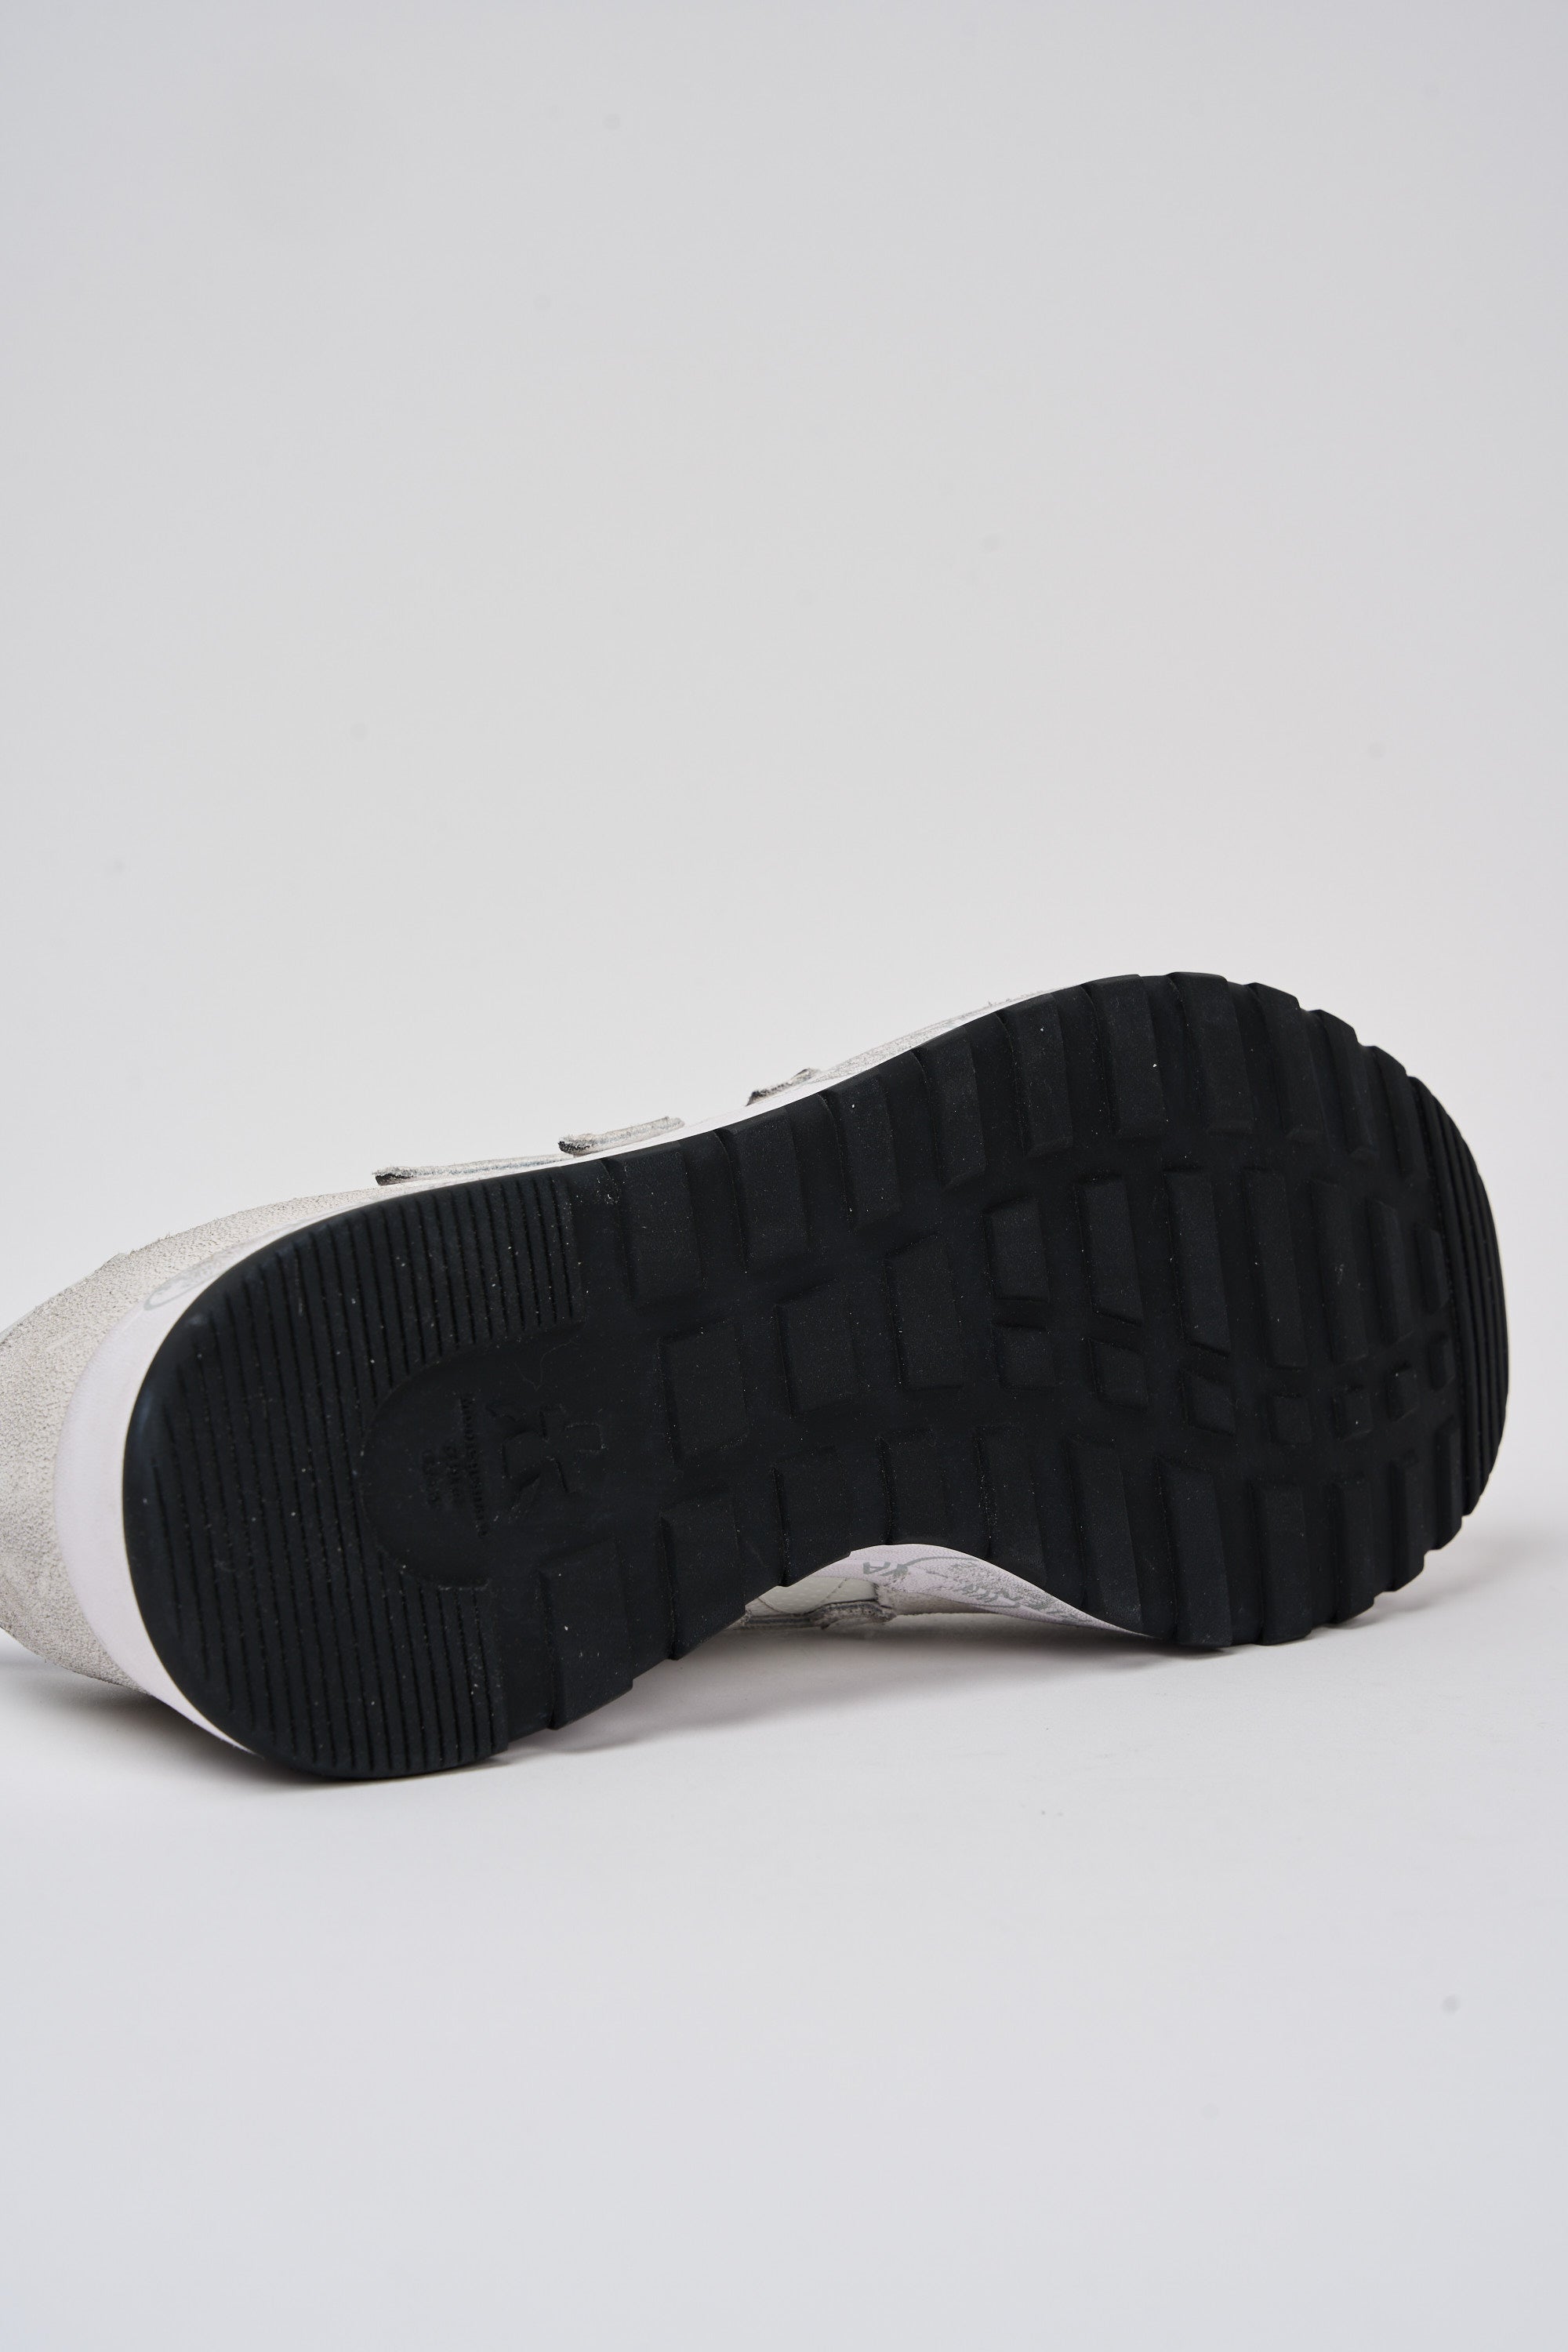 Premiata Sneaker Nous in Leather/Suede/Nylon White/Grey-5